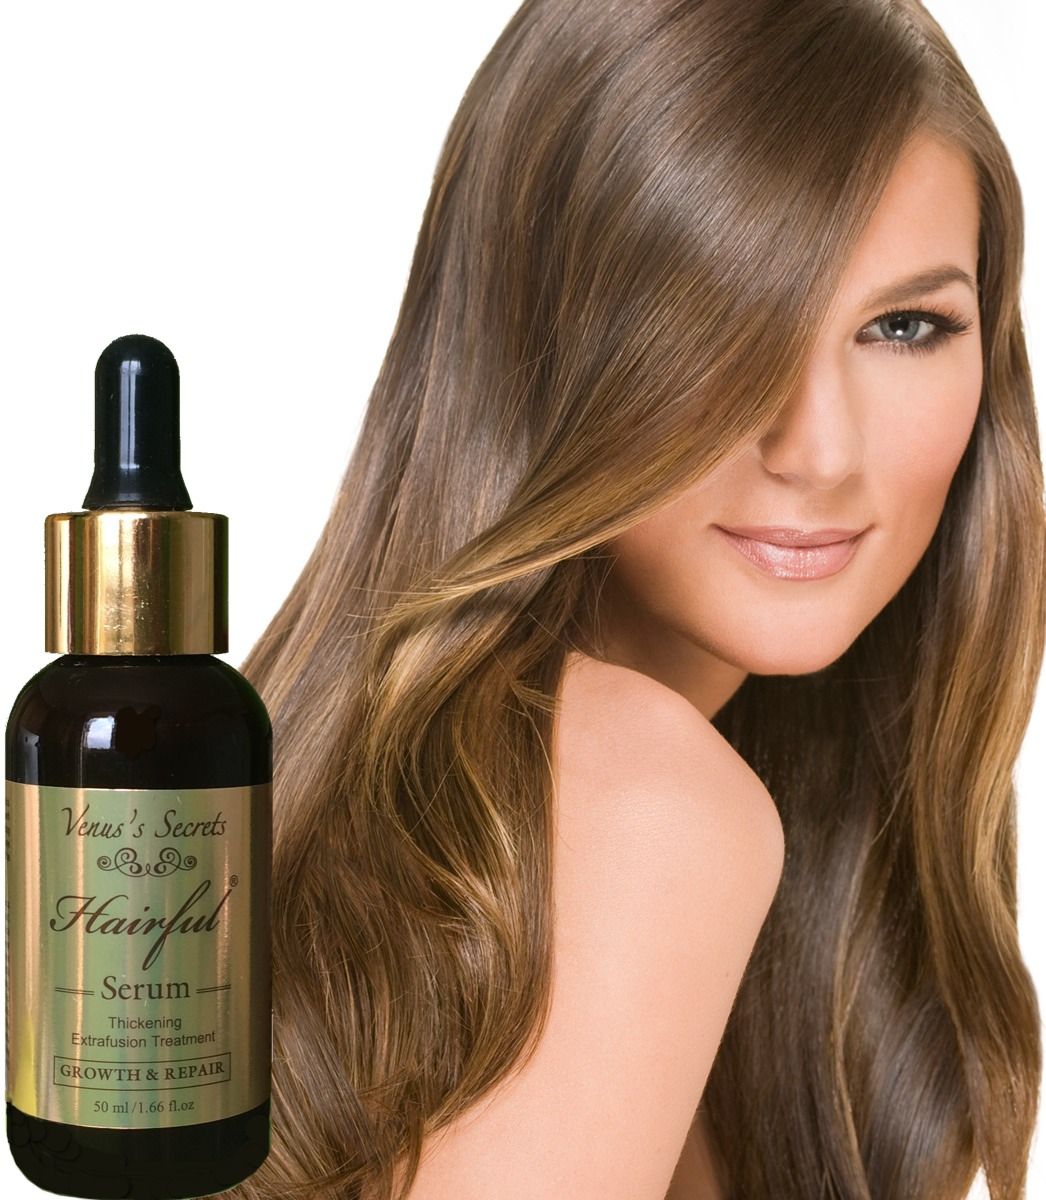 Hairful serum cung cấp dưỡng chất thiết yếu nuôi dưỡng cho mái tóc chắc khỏe, mượt mà